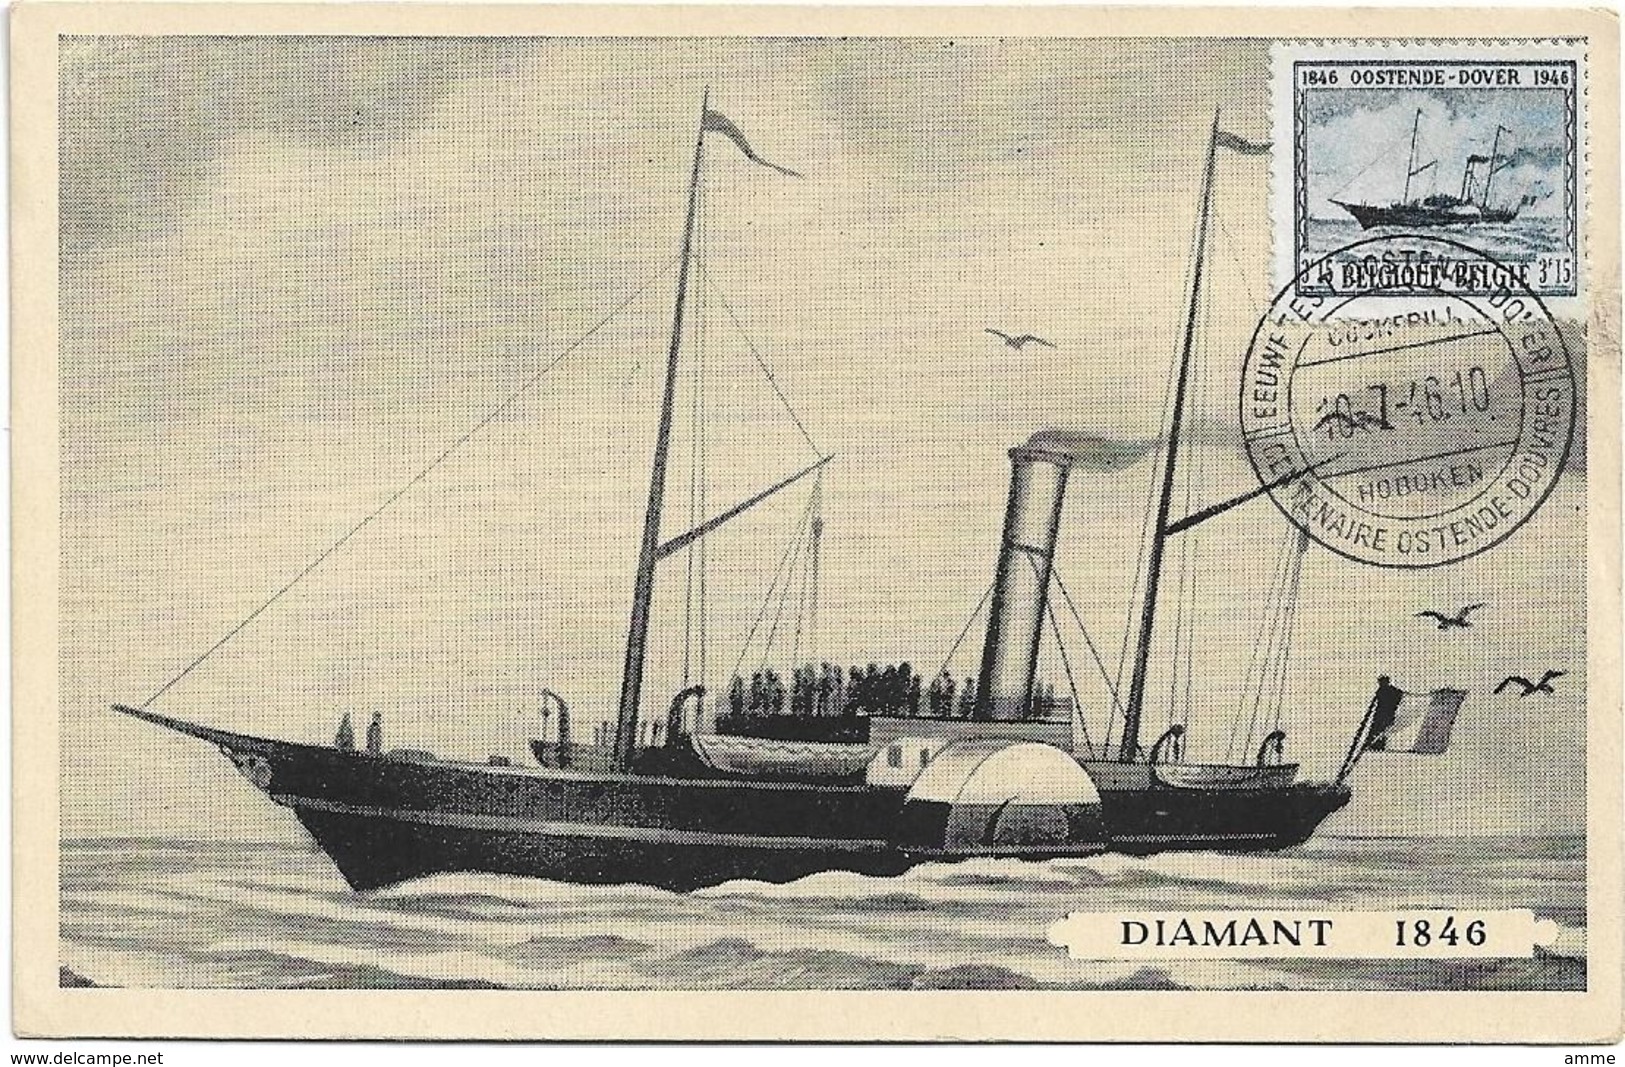 Oostende  *  Eeuwfeest - Centenaire Oostende - Dover 1946  ( Diamant 1846 ) - Cartes Paquebot